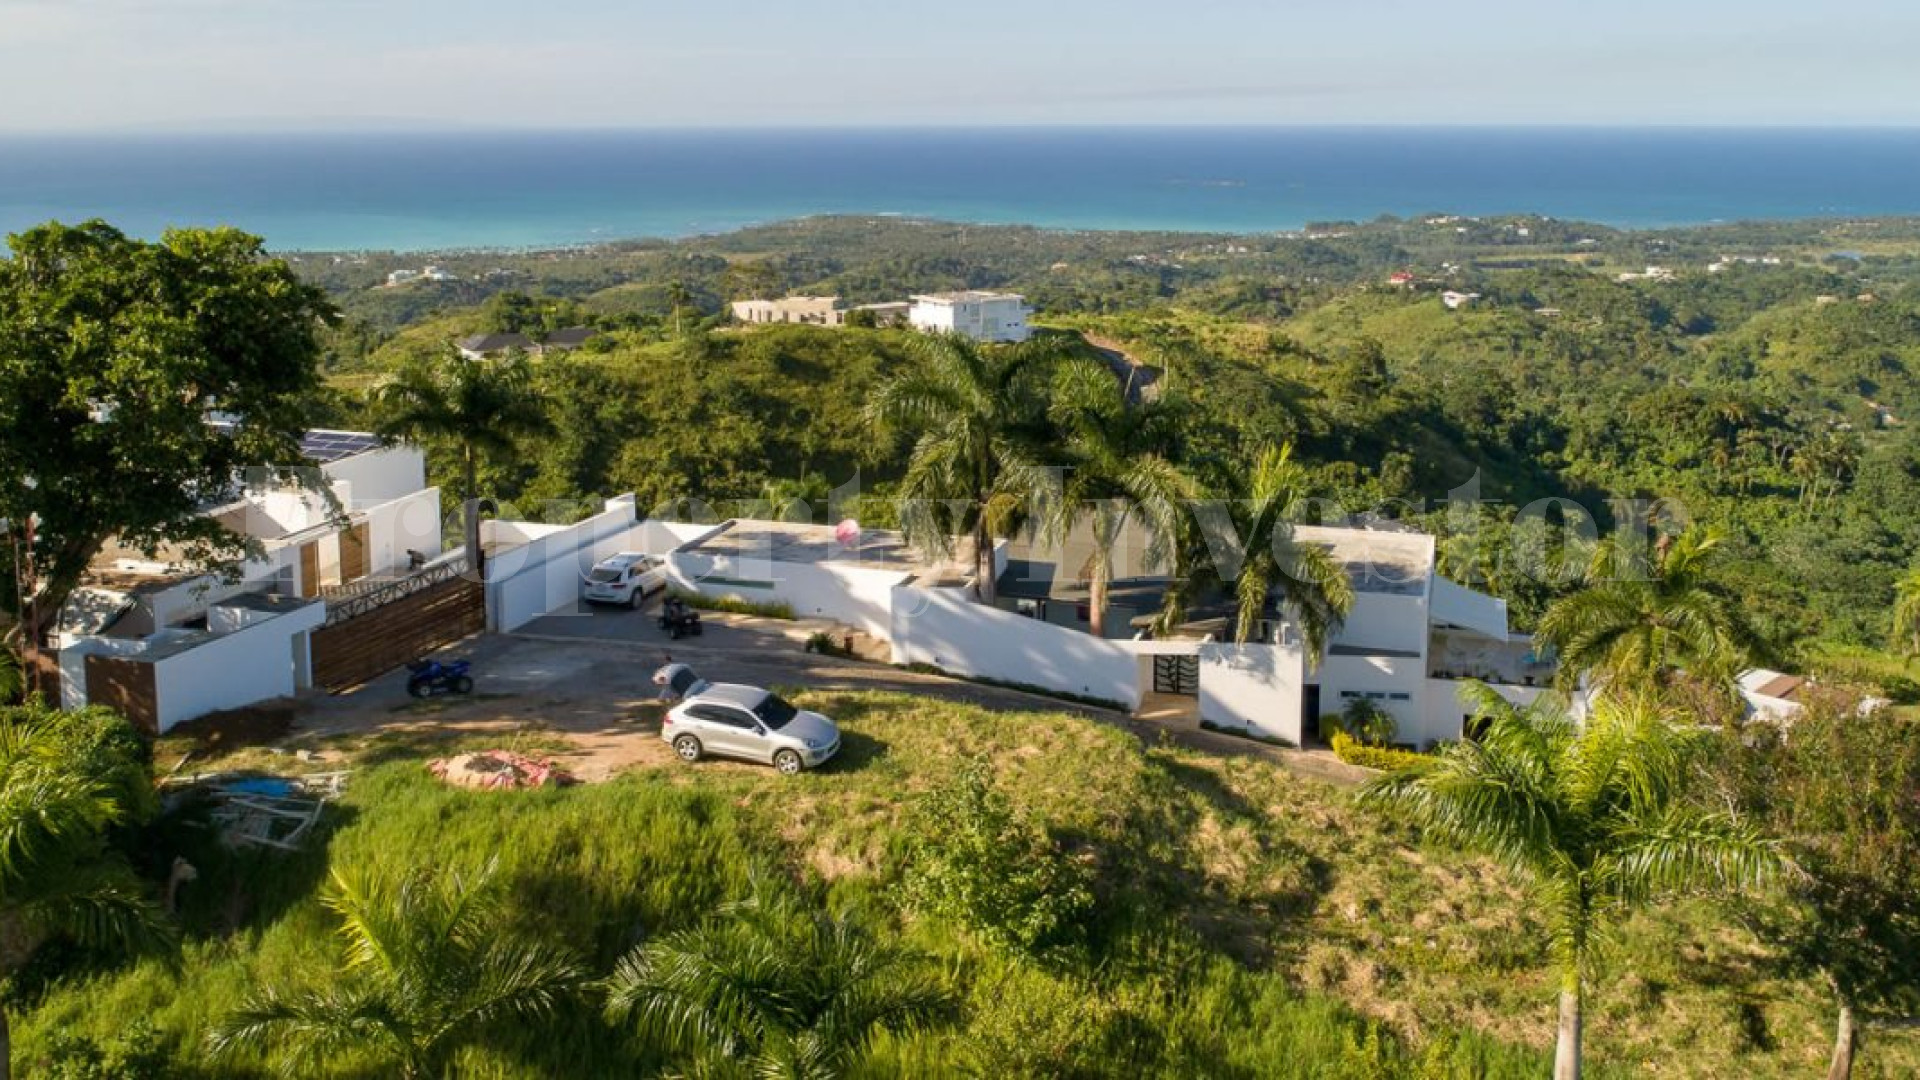 4 Bedroom Seaview Villa Overlooking Las Terrenas